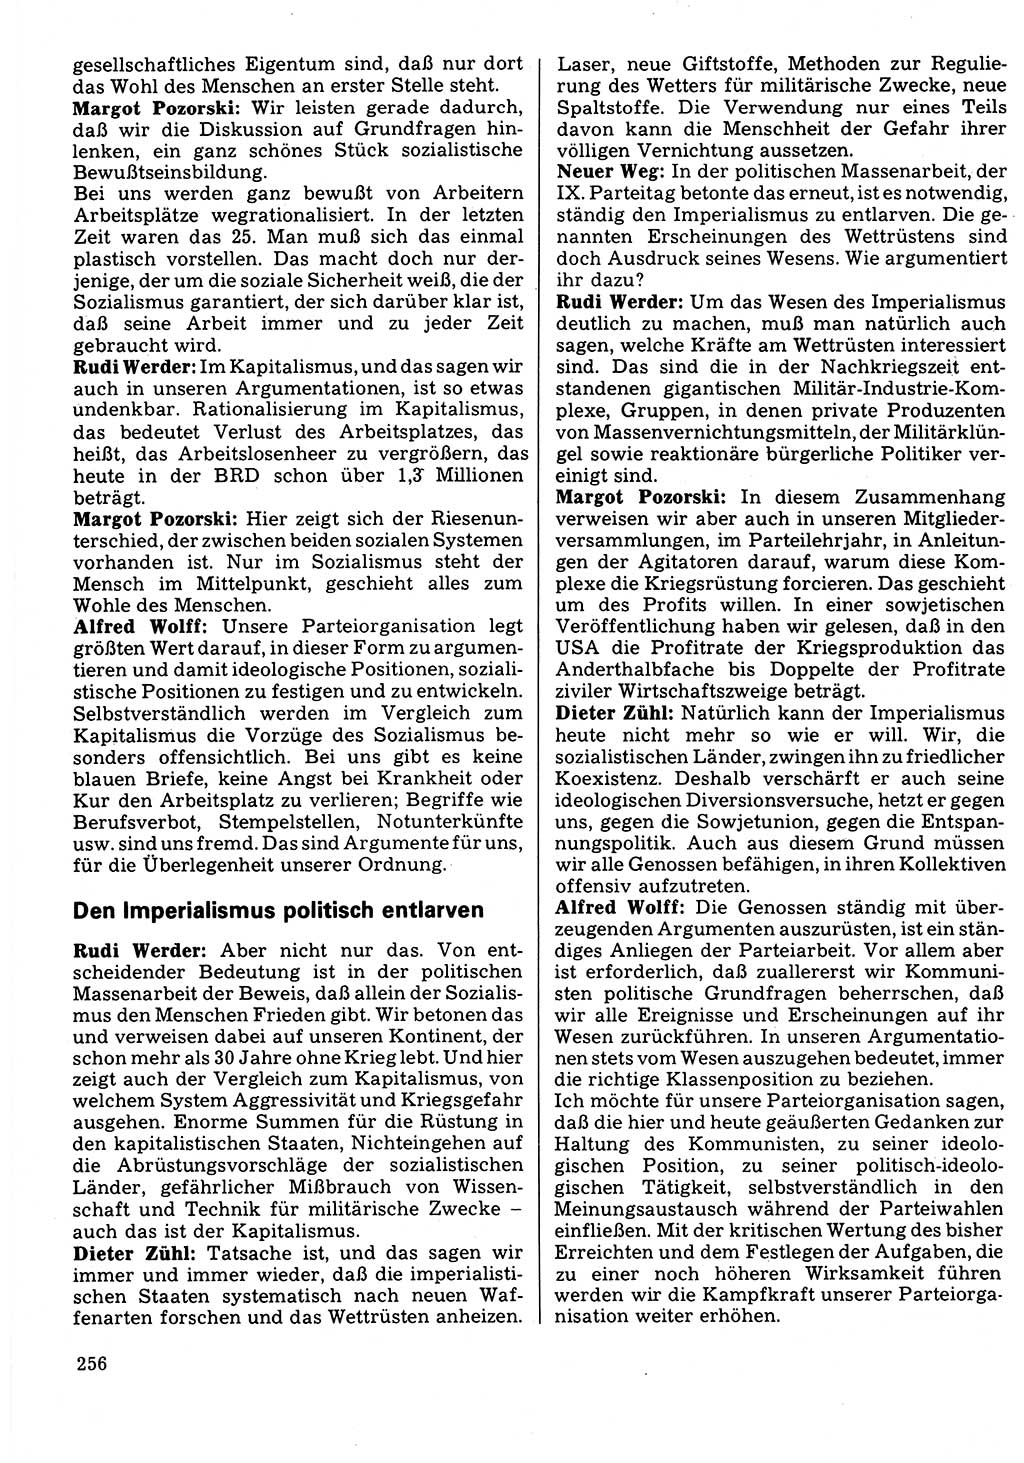 Neuer Weg (NW), Organ des Zentralkomitees (ZK) der SED (Sozialistische Einheitspartei Deutschlands) für Fragen des Parteilebens, 32. Jahrgang [Deutsche Demokratische Republik (DDR)] 1977, Seite 256 (NW ZK SED DDR 1977, S. 256)